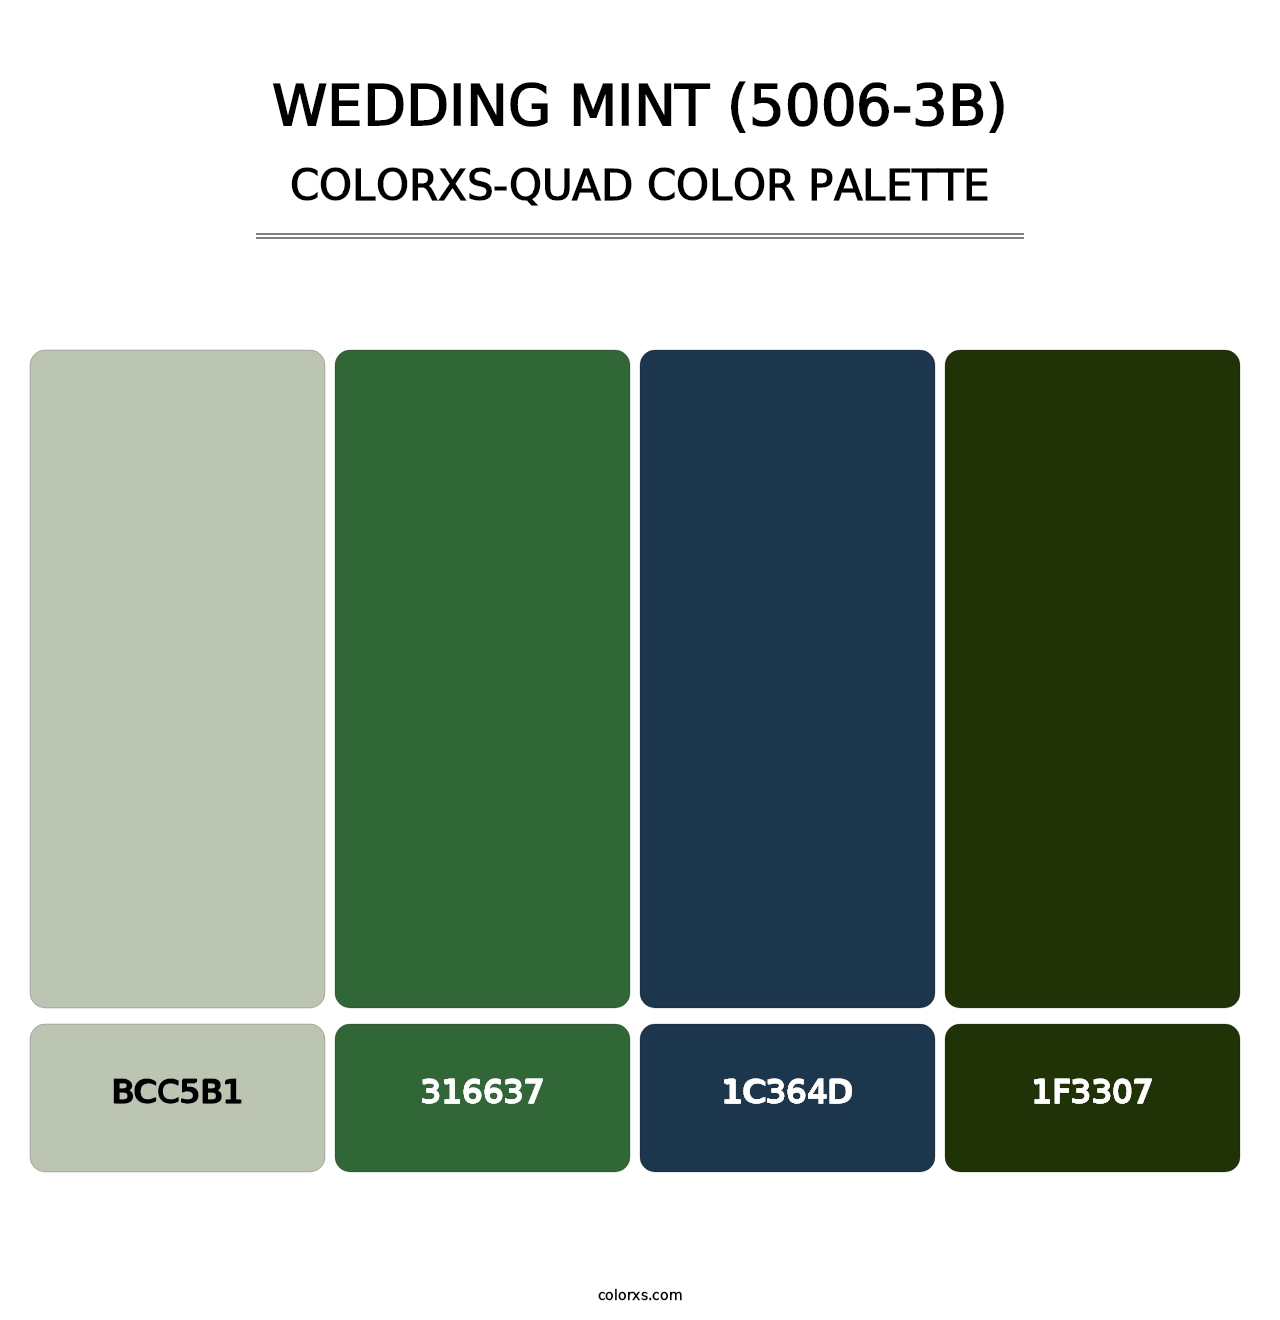 Wedding Mint (5006-3B) - Colorxs Quad Palette